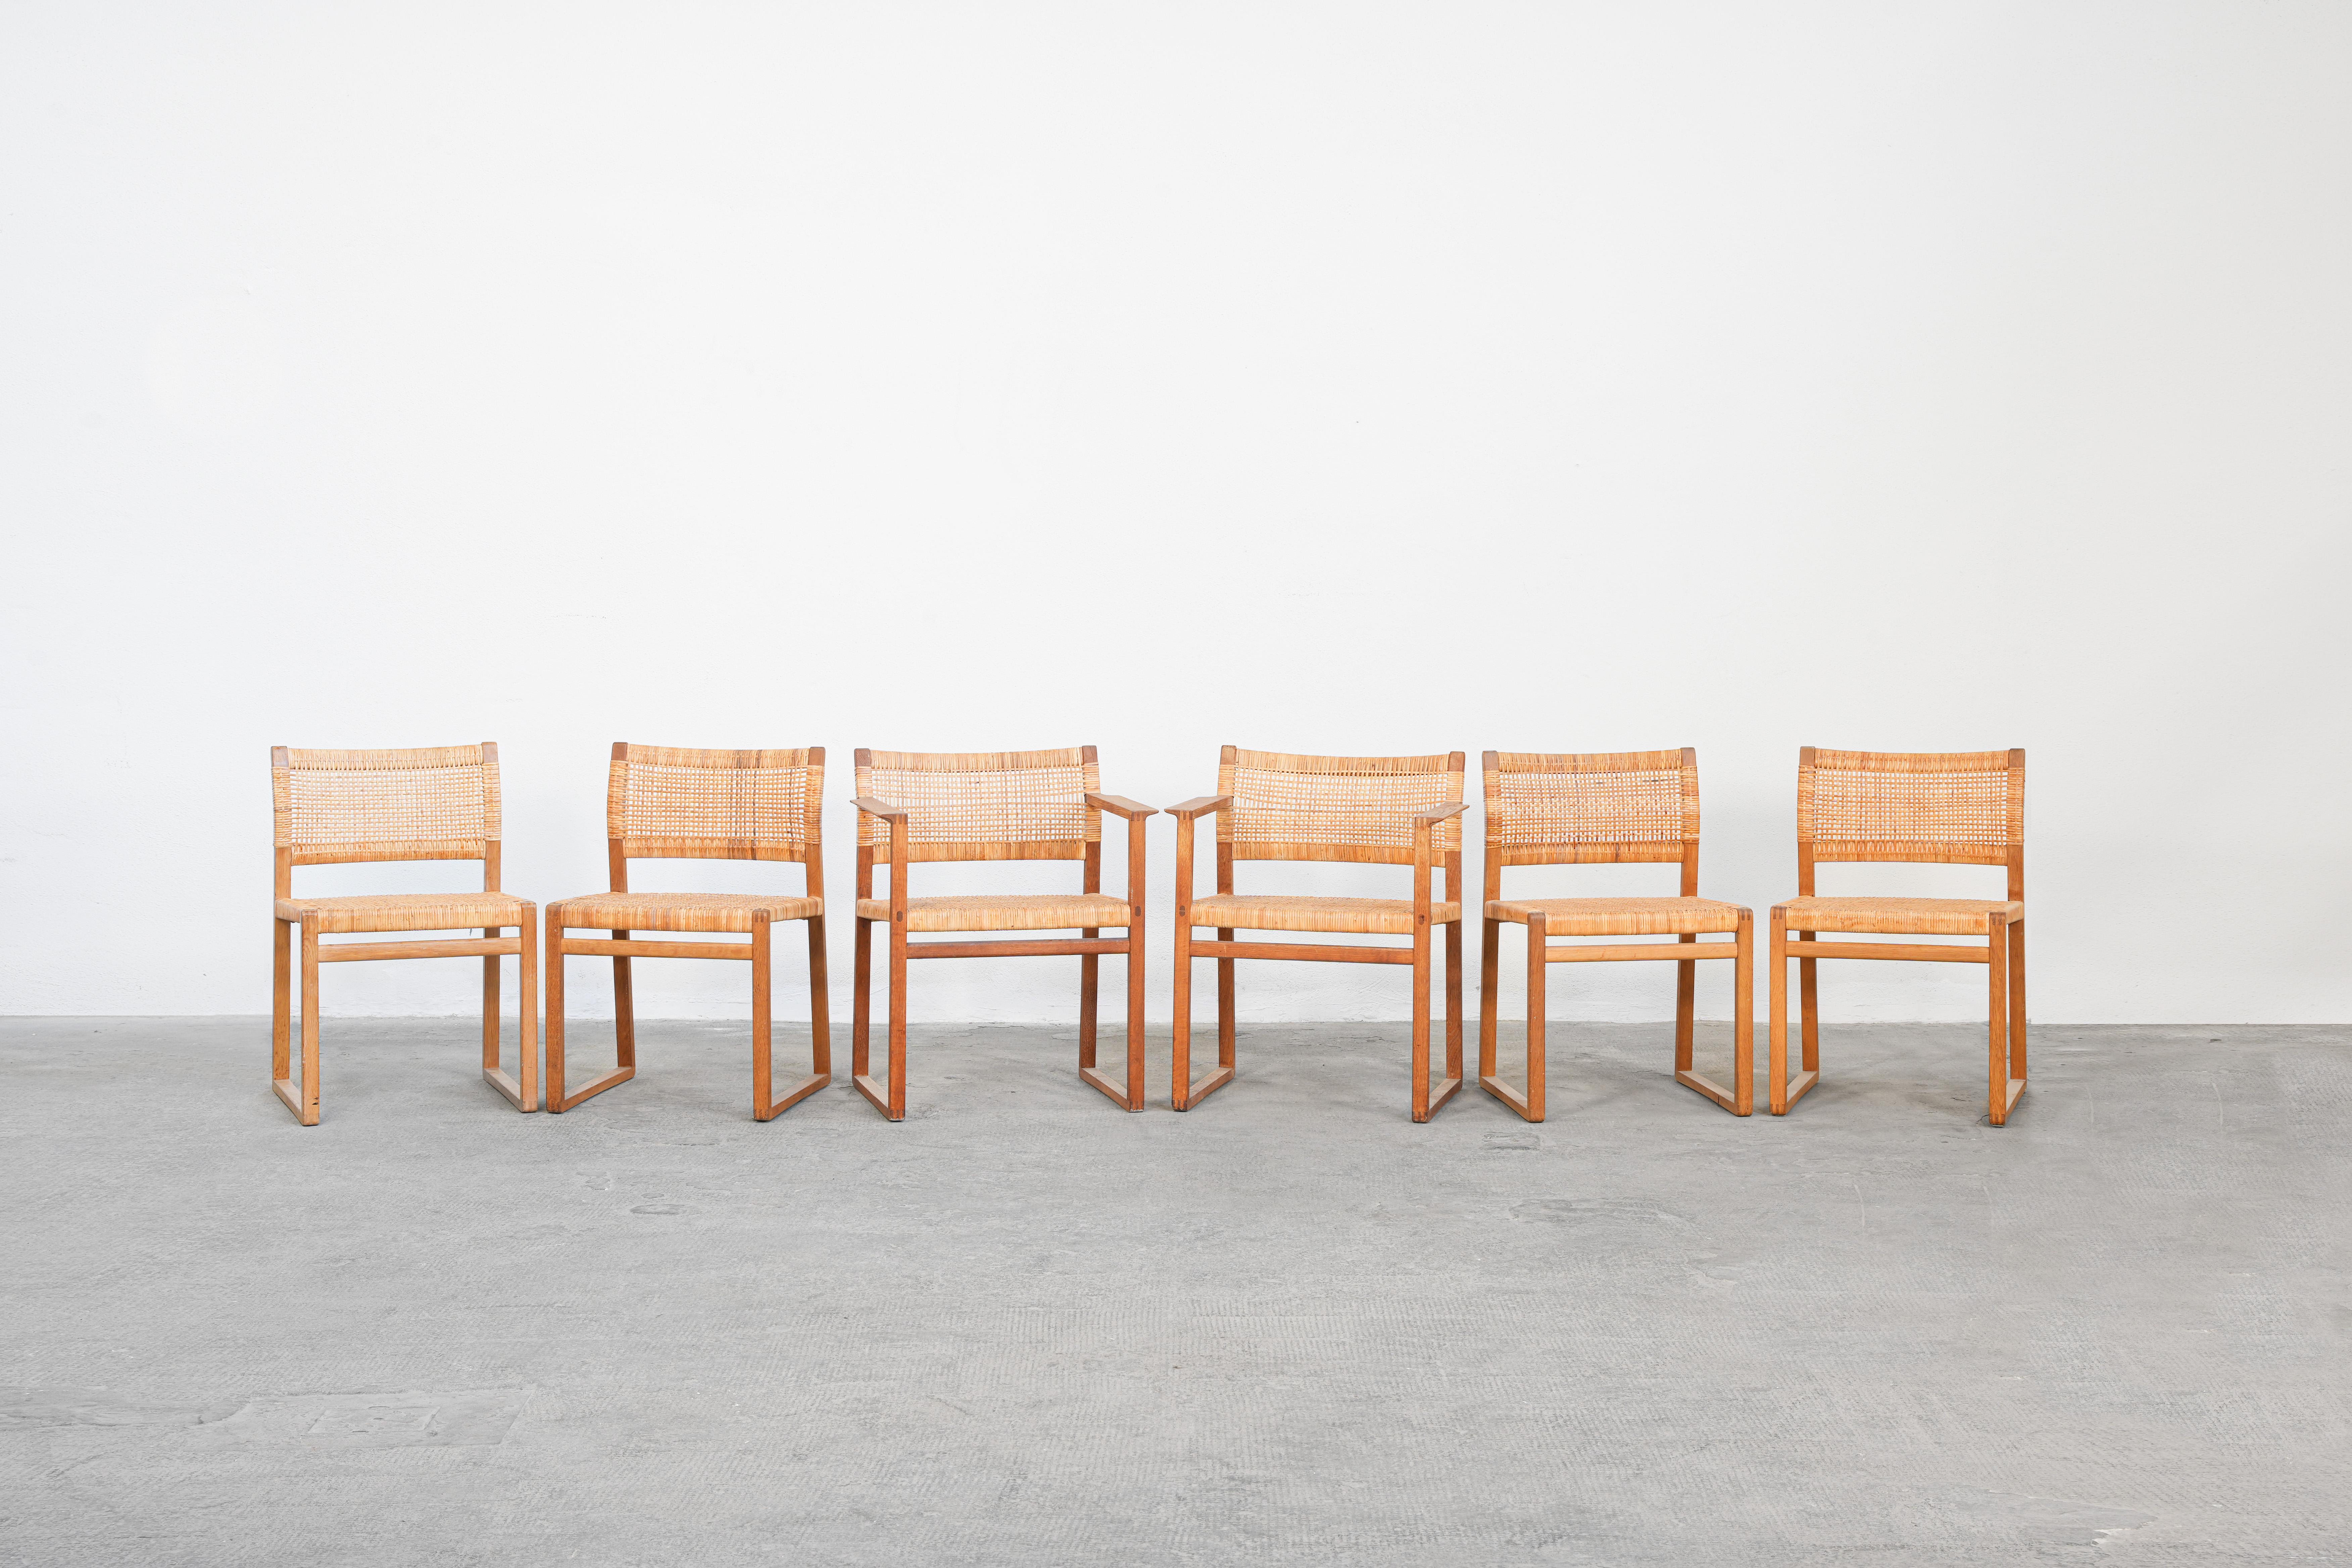 Ein sehr schönes Set von 6, 4 Stühlen Mod. BM 61 und 2 Sessel Mod. BM62, entworfen von Børge Mogensen für Fredericia Stolefabrik, Dänemark. Alle Stühle sind in sehr gutem Zustand mit nur geringen Gebrauchsspuren. Der Rahmen ist aus Eichenholz